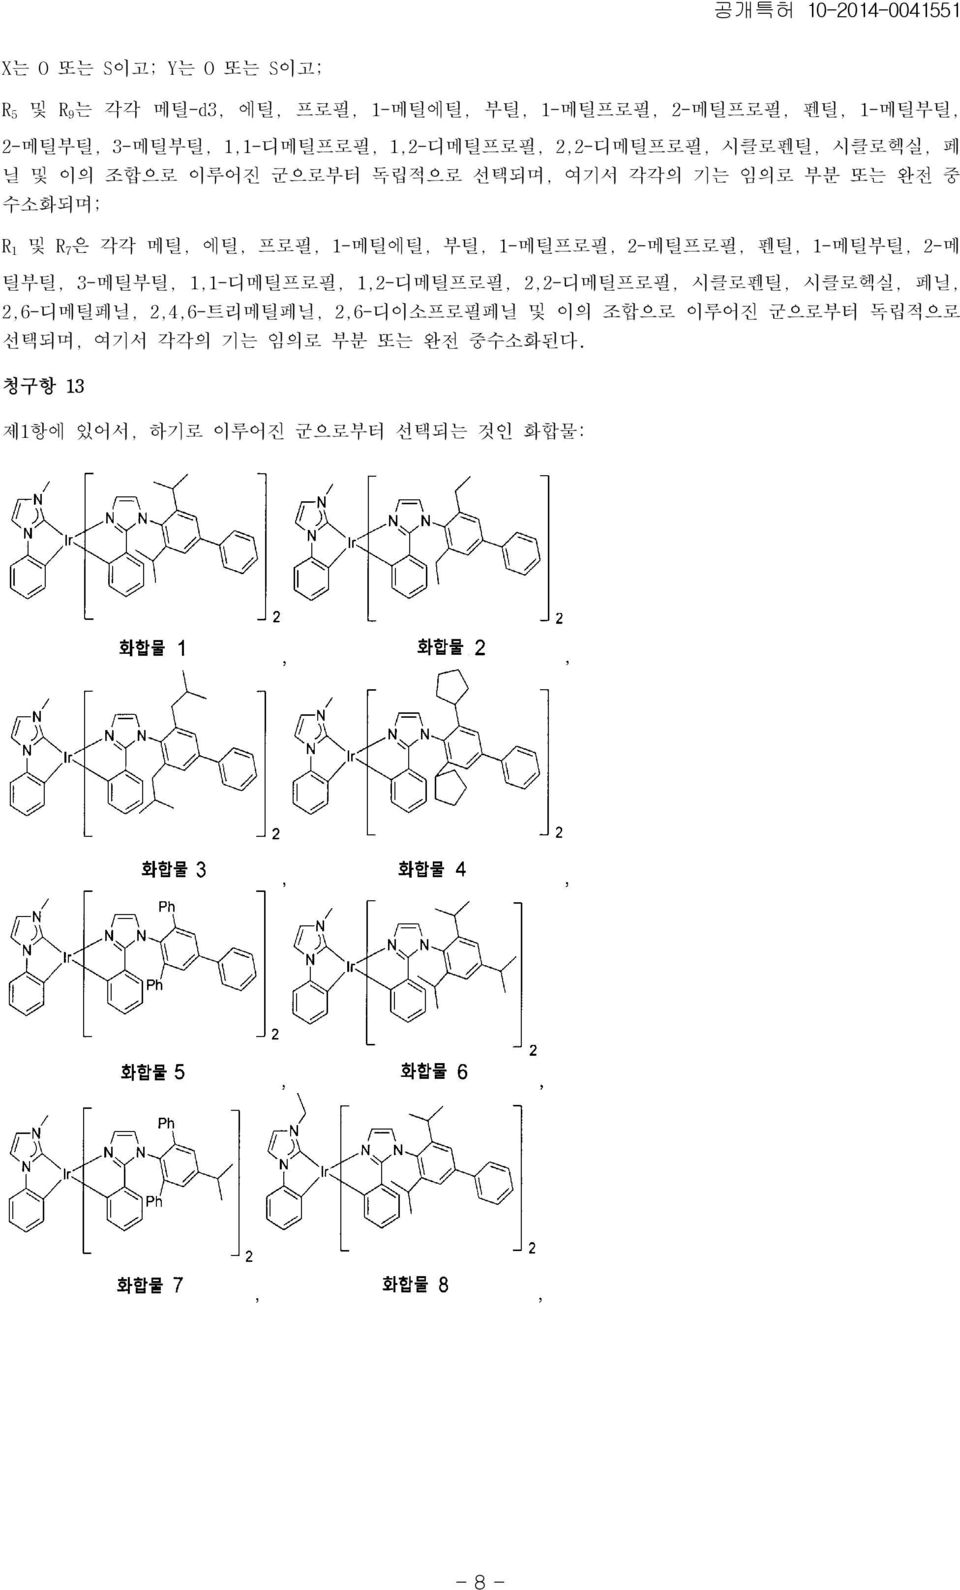 프로필, 1-메틸에틸, 부틸, 1-메틸프로필, 2-메틸프로필, 펜틸, 1-메틸부틸, 2-메 틸부틸, 3-메틸부틸, 1,1-디메틸프로필, 1,2-디메틸프로필, 2,2-디메틸프로필, 시클로펜틸, 시클로헥실, 페닐, 2,6-디메틸페닐,